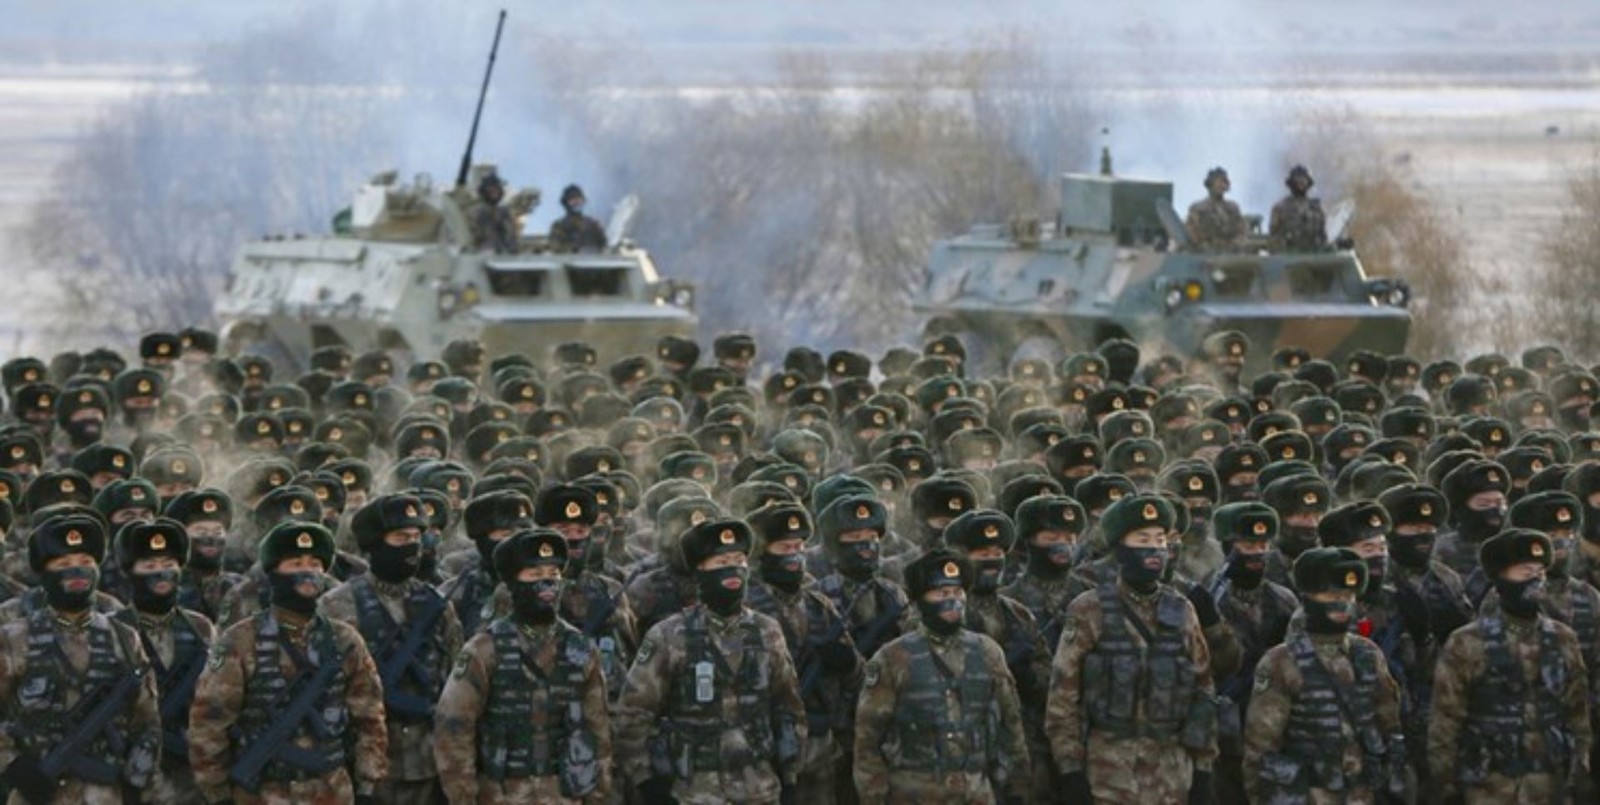 Chiny chcą zredefiniować wojnę pancerną. Spójrz na nowy czołg czwartej generacji